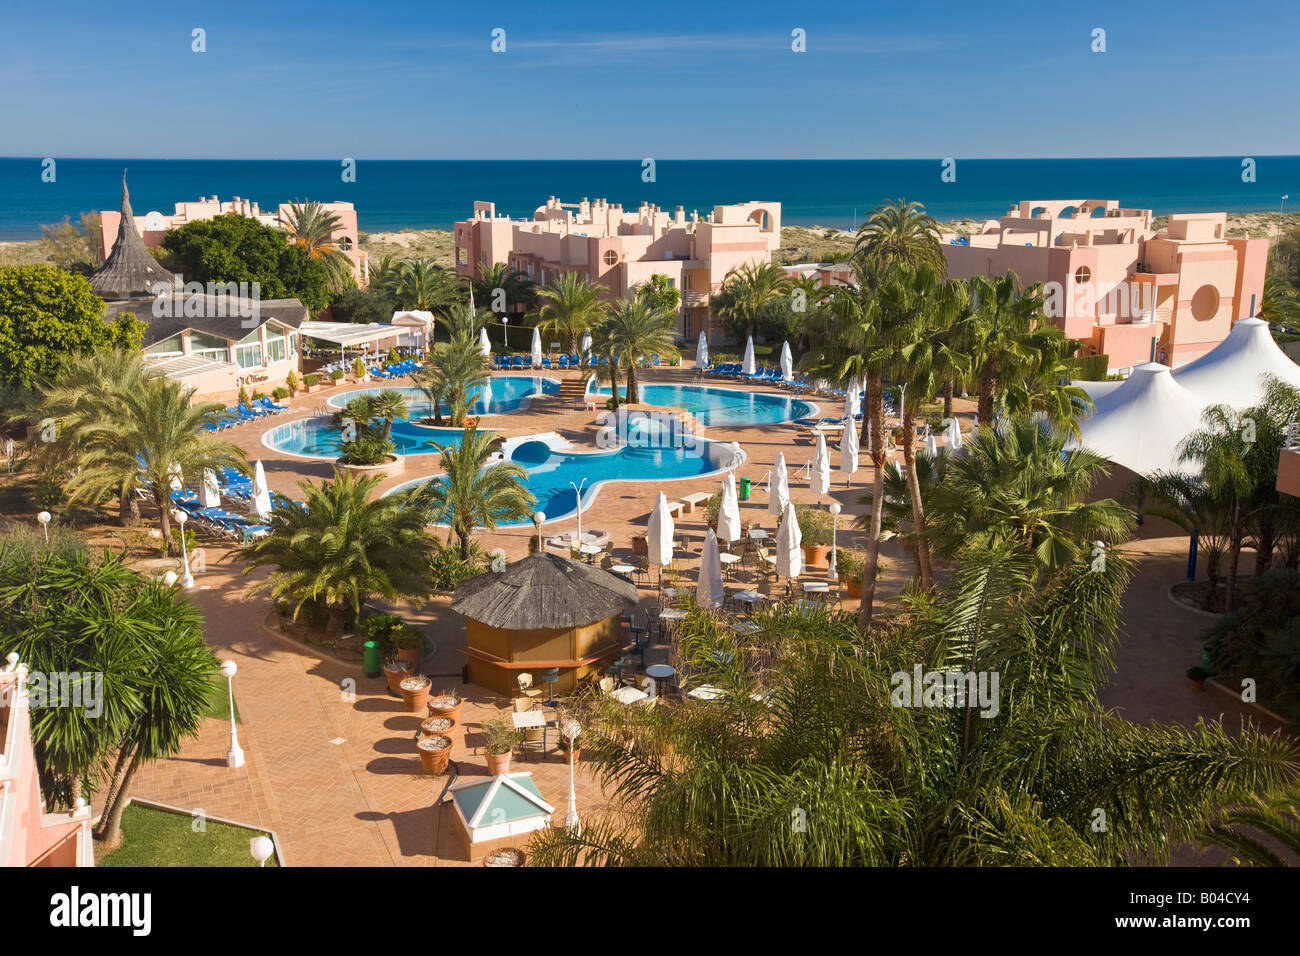 Vista desde las habitaciones del Oliva Nova Hotel con vistas sobre la piscina hacia el mar Mediterráneo, la Costa Blanca Foto de stock